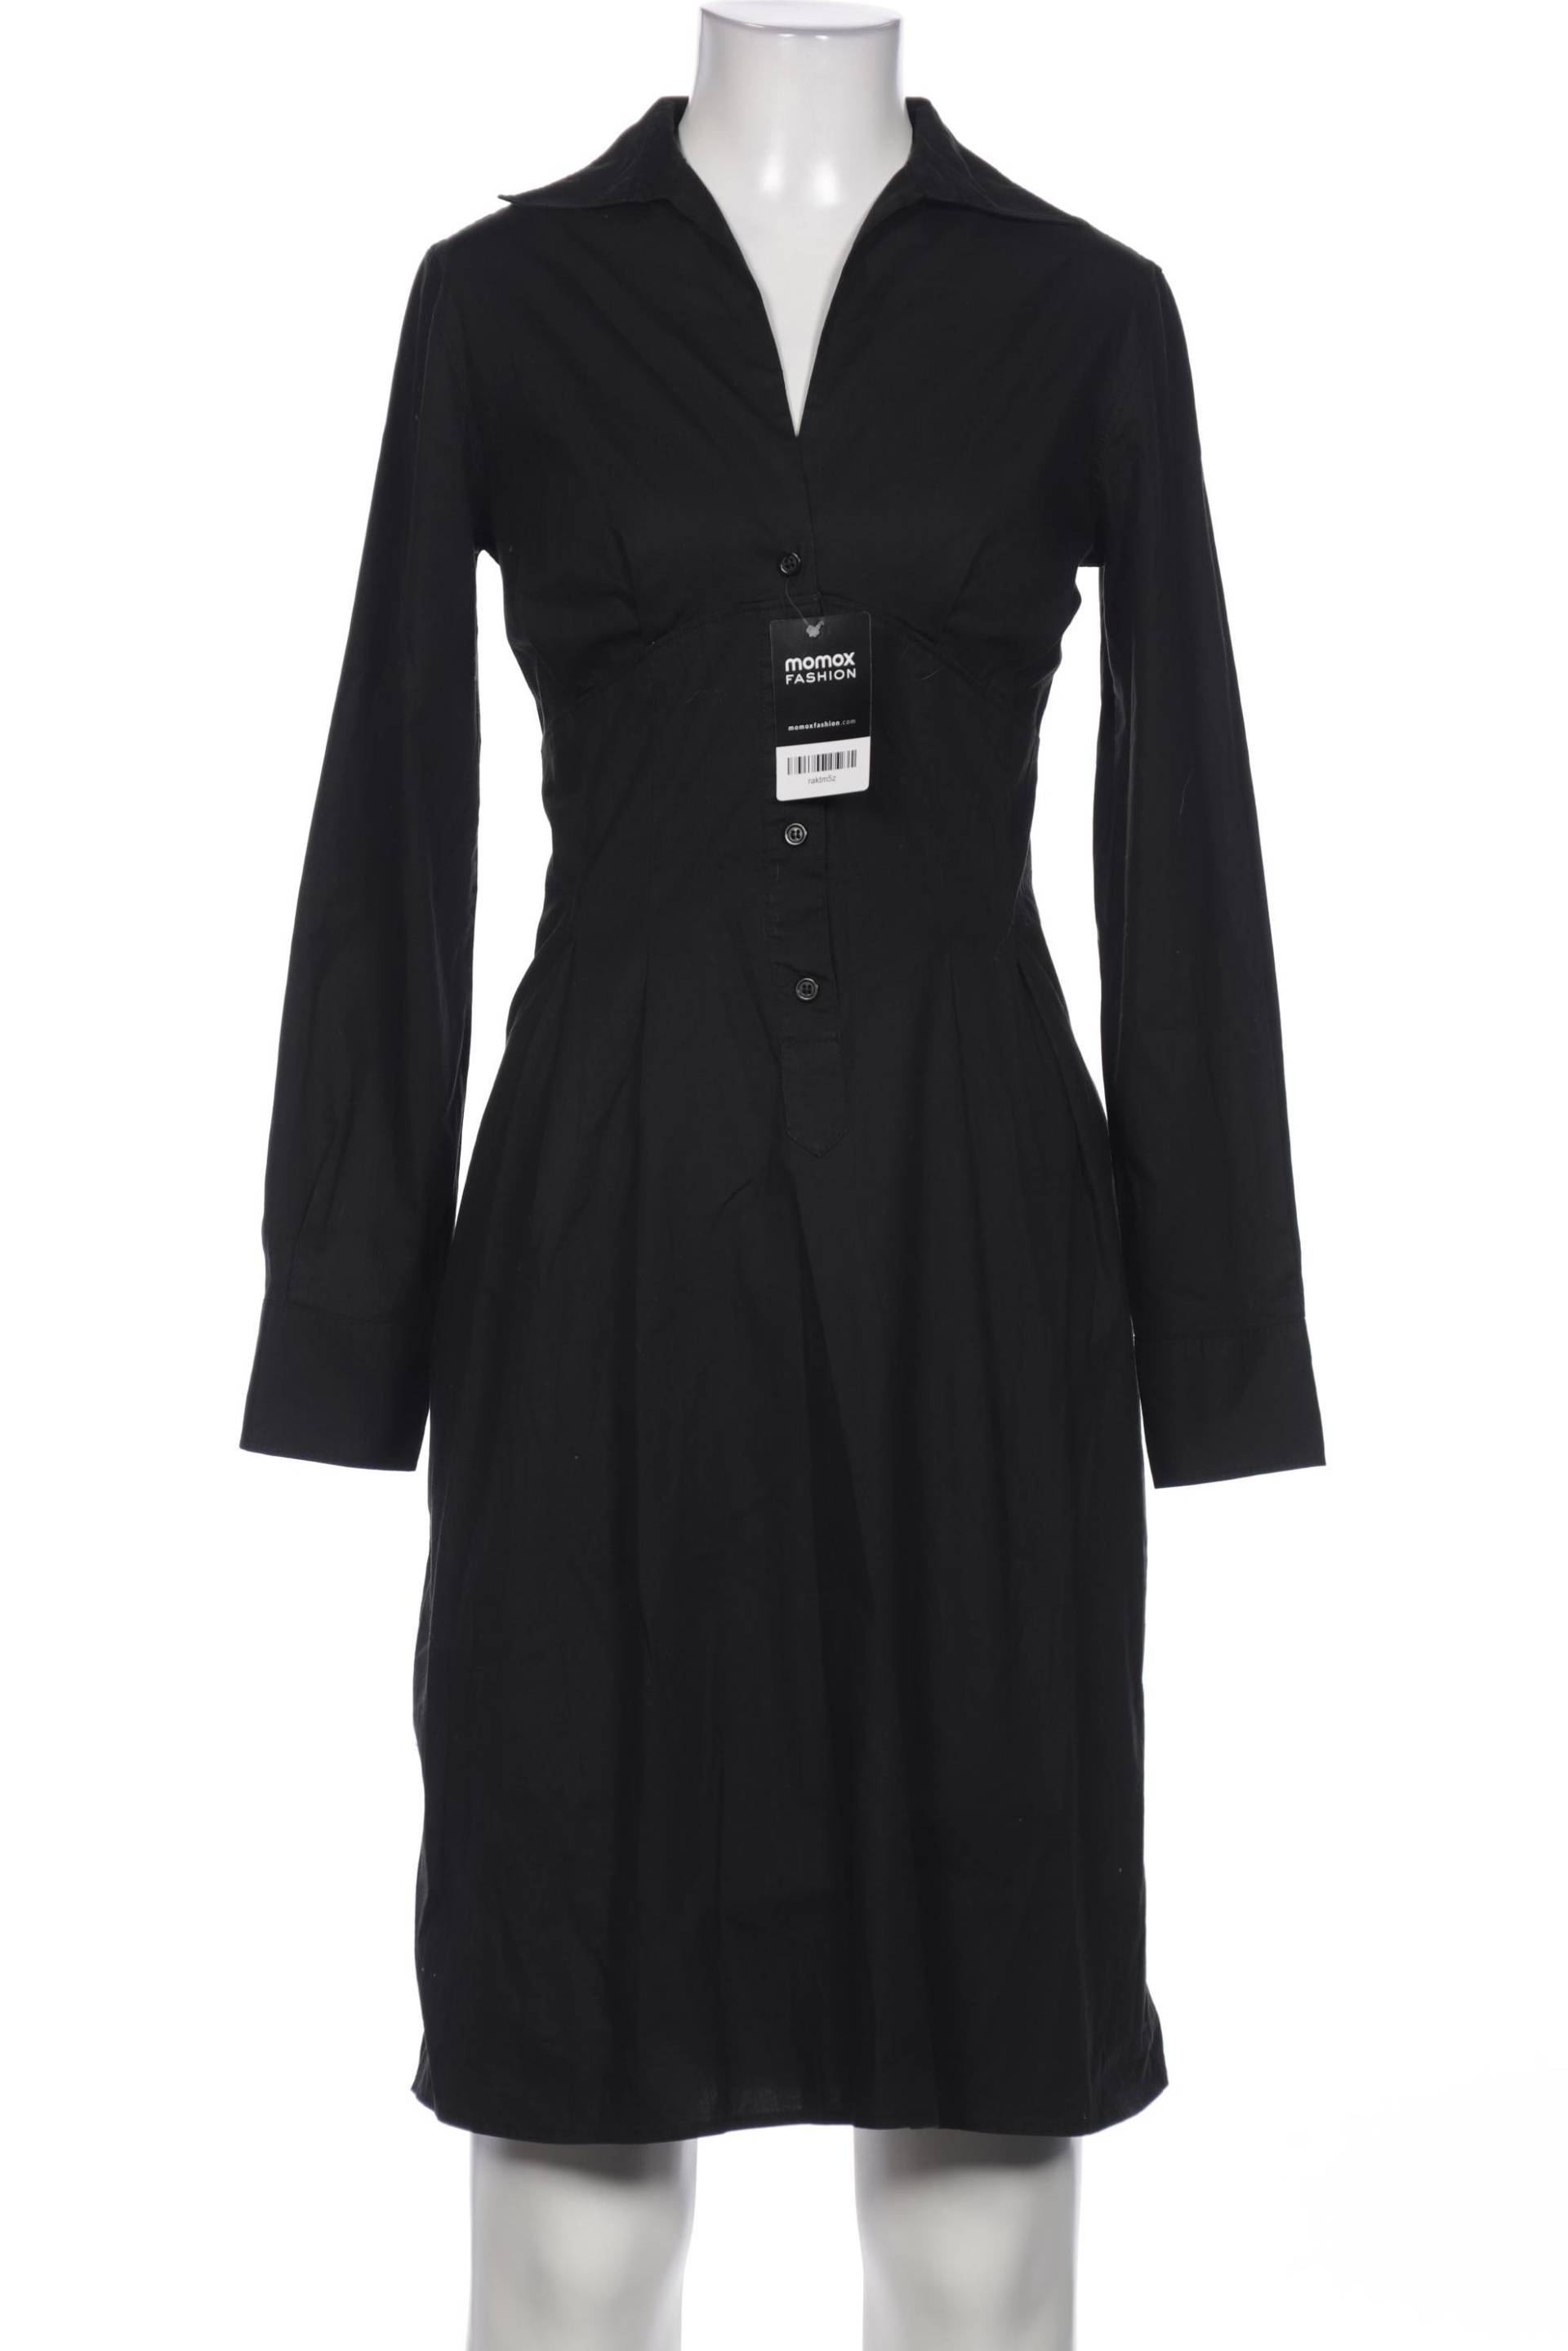 PS Paul Smith Damen Kleid, schwarz, Gr. 36 von PS Paul Smith